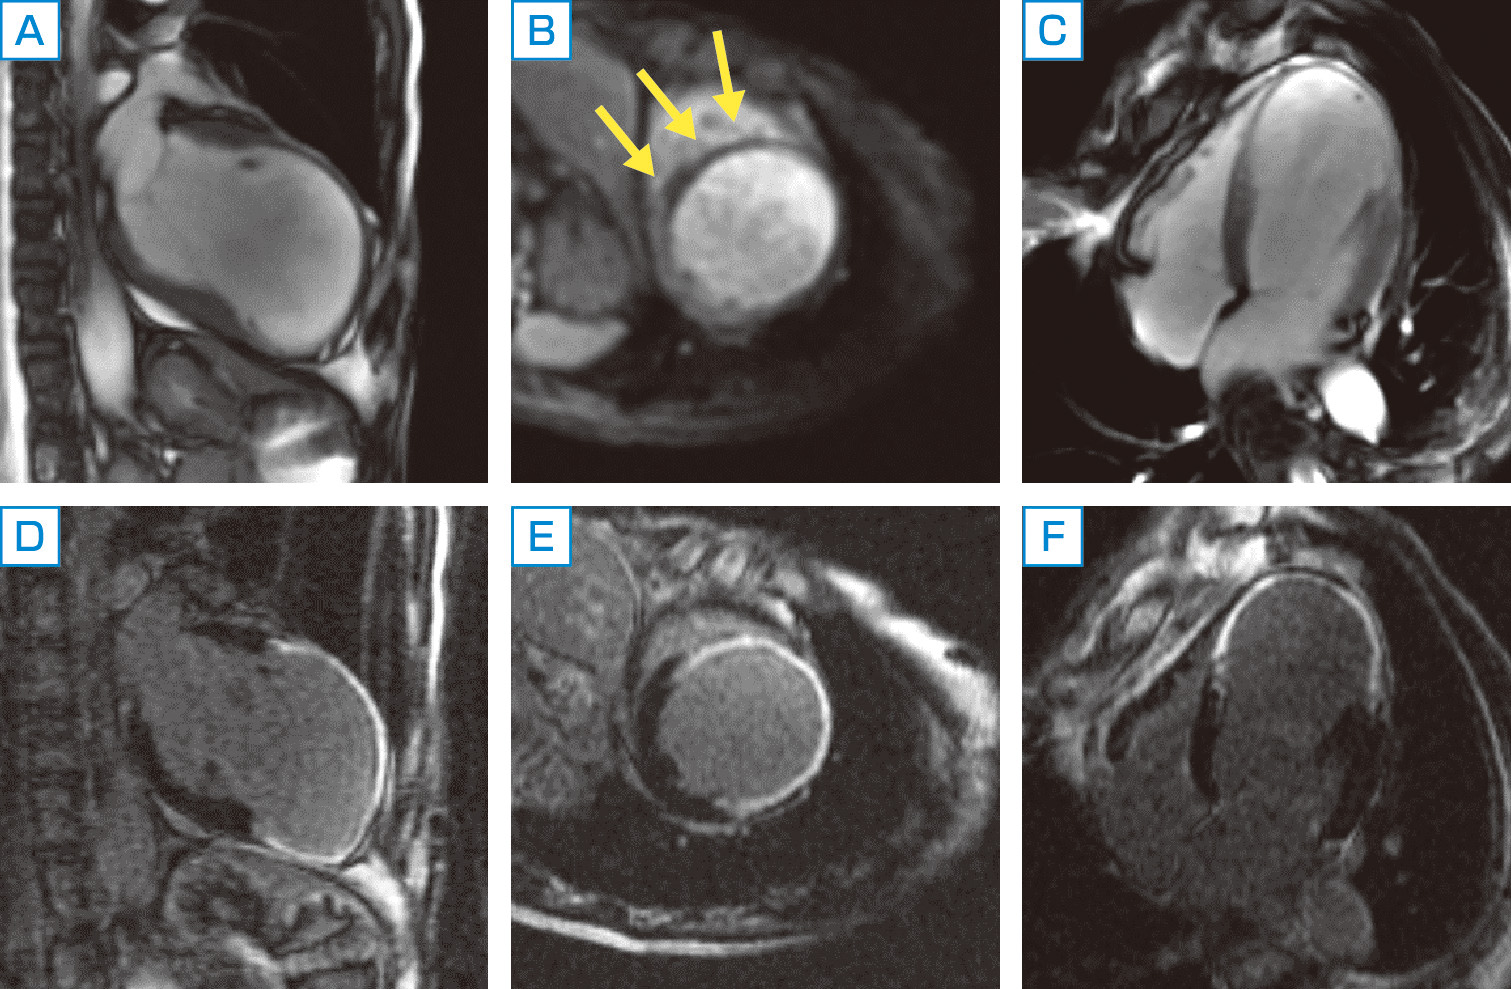 ⓔ図8-5-33　虚血性心疾患 (陳旧性心筋梗塞) のMRI A～C：シネ画像では左室広範前壁は菲薄化し心腔拡大を認める．また，低信号領域 (矢印) も認め，左前下行枝領域の血流低下を示唆する． D～F：菲薄化した左室壁に一致してガドリニウム遅延造影を認める．菲薄化はほぼ全層に及ぶことからバイアベリティはなく心筋壊死していることが示唆される．